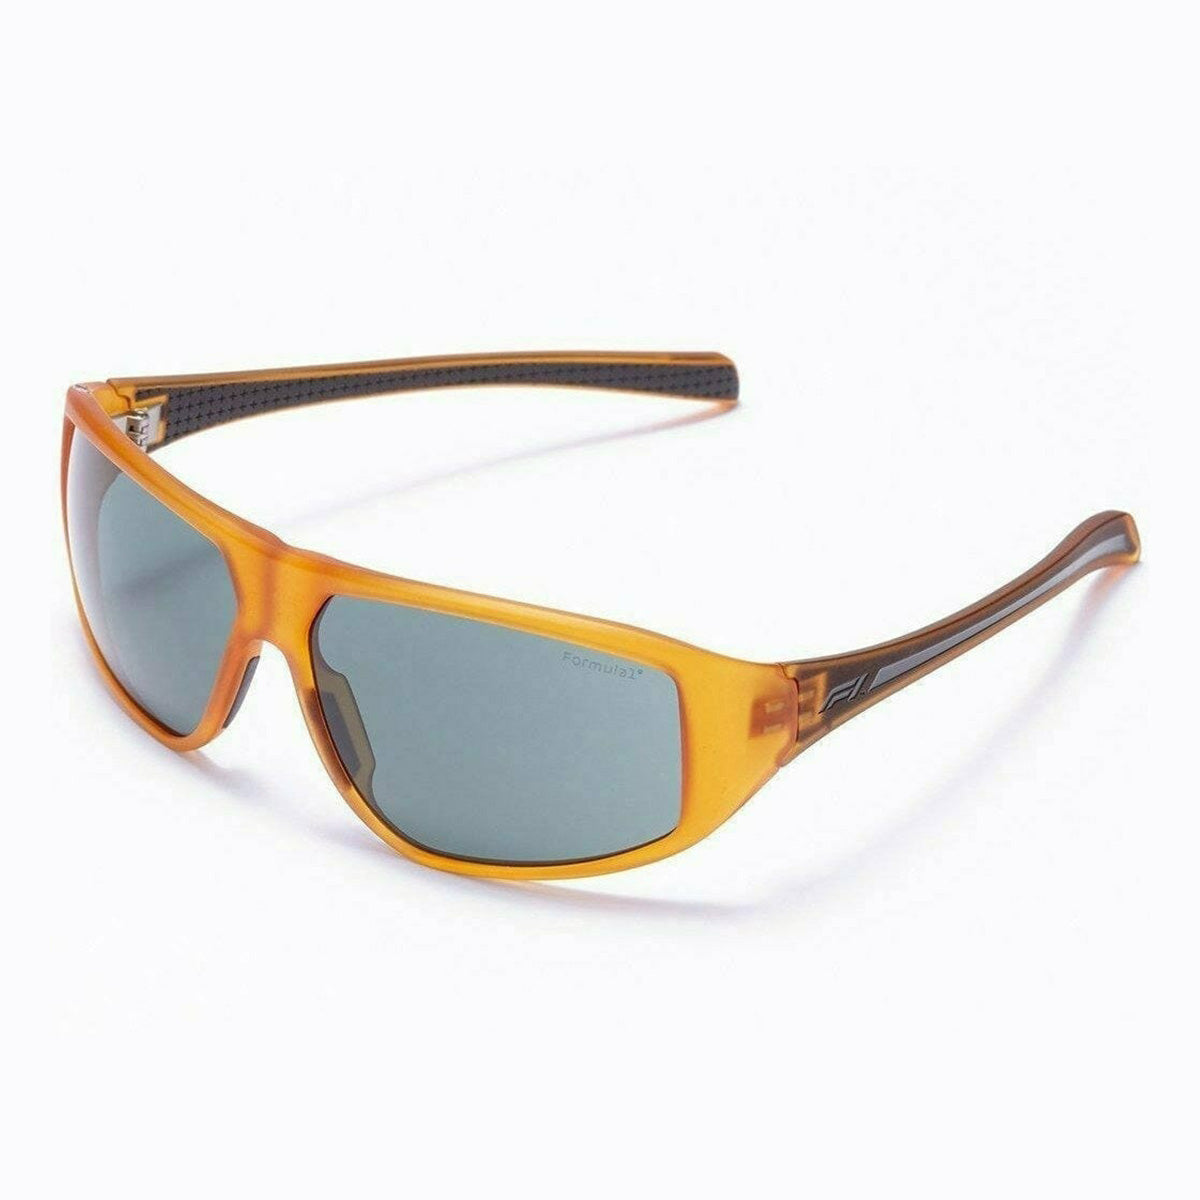 Formula 1 Eyewear Red Collection Unisex Sunglasses - Speed Freak Orange